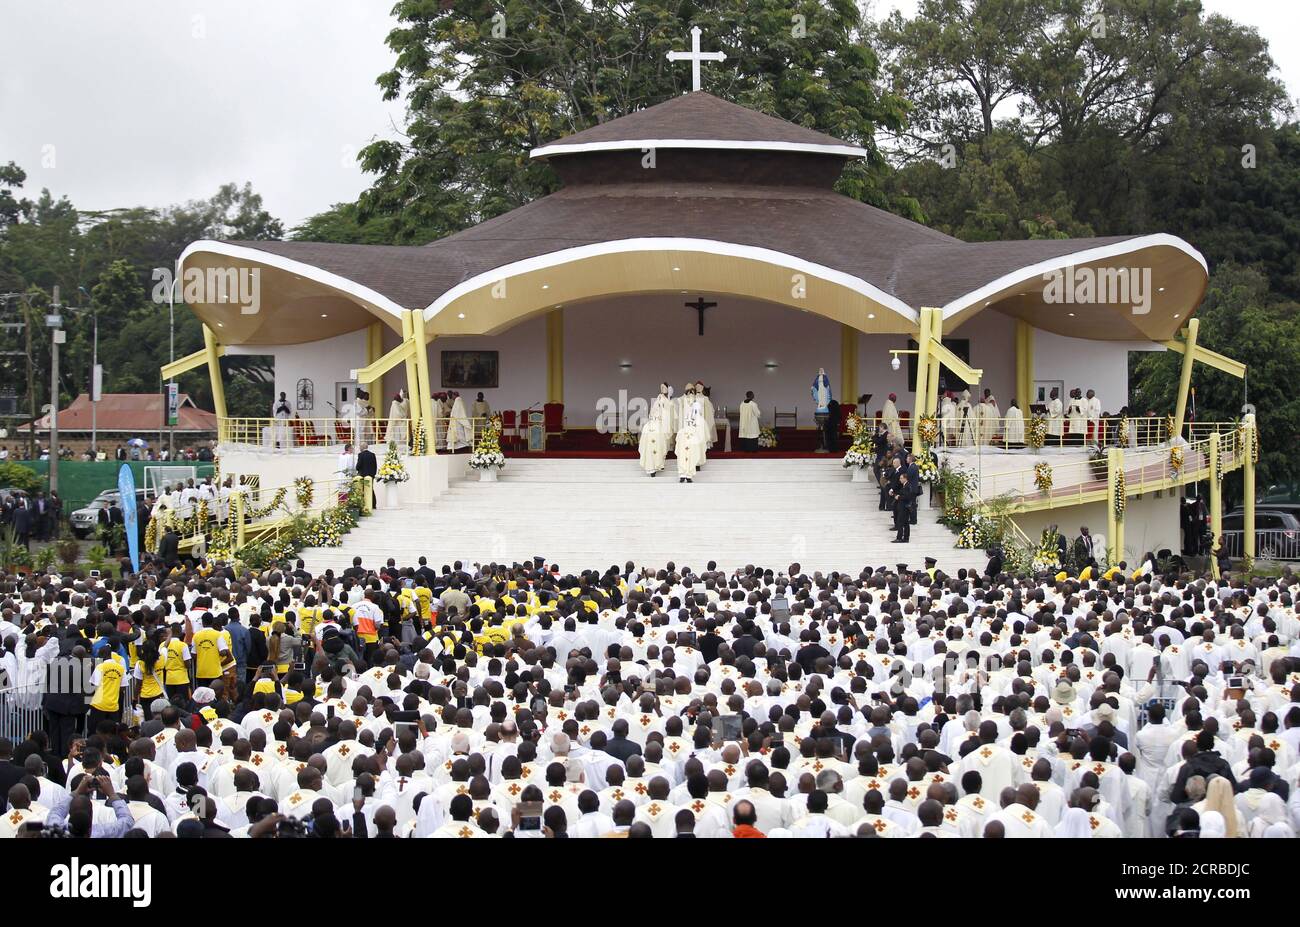 Les membres du clergé arrivent pour une messe par le pape François dans la capitale du Kenya Nairobi, le 26 novembre 2015. REUTERS/Thomas Mukoya Banque D'Images